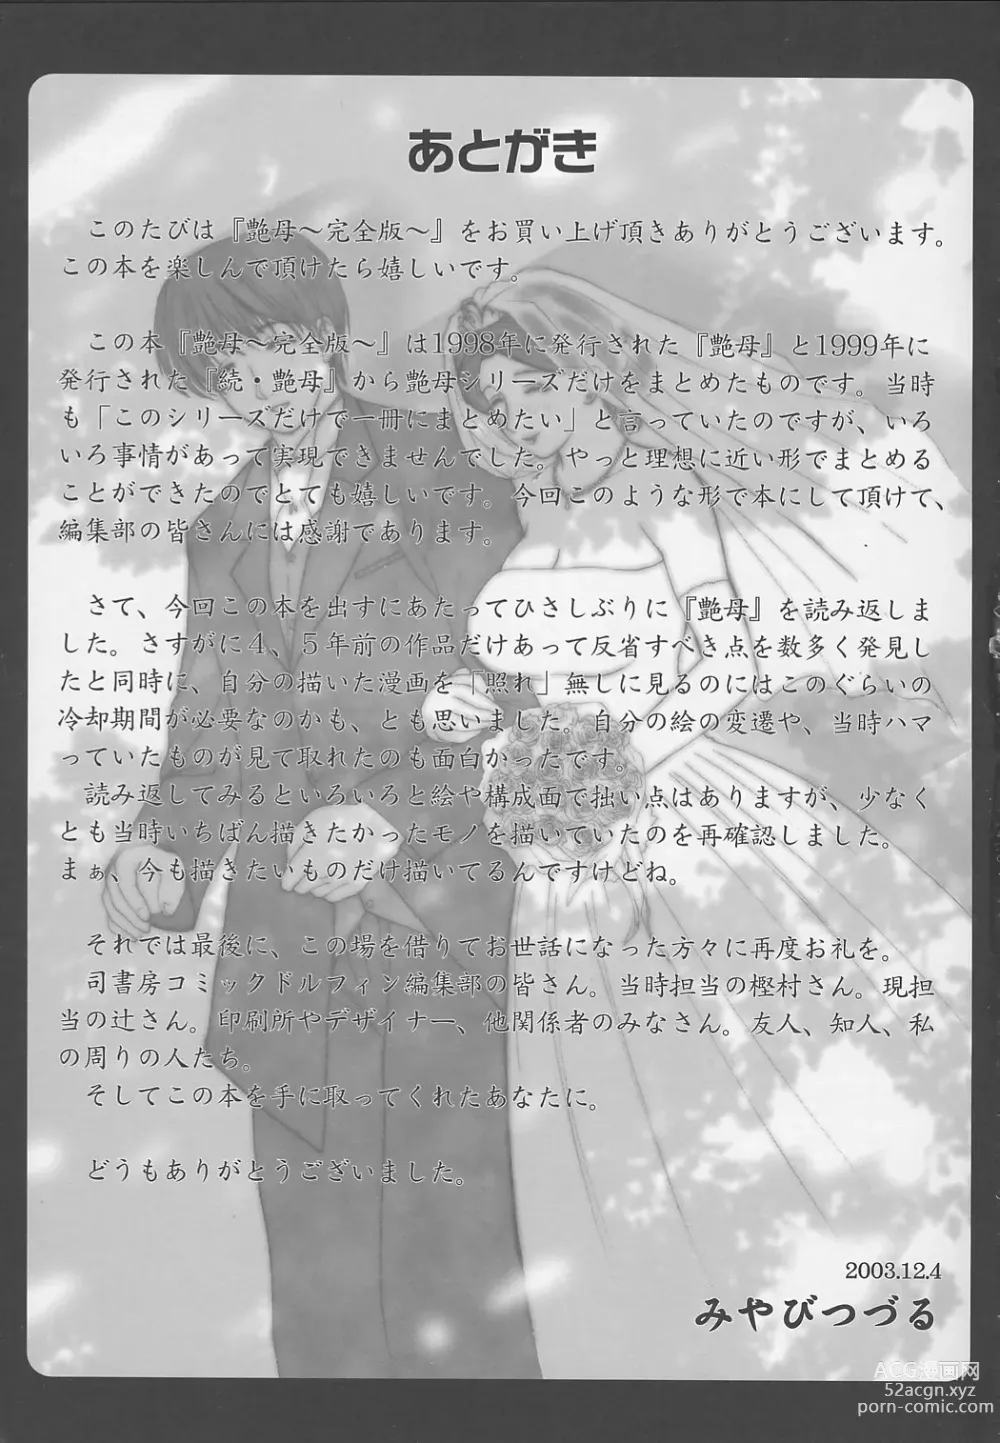 Page 252 of manga Enbo -Kanzenban-